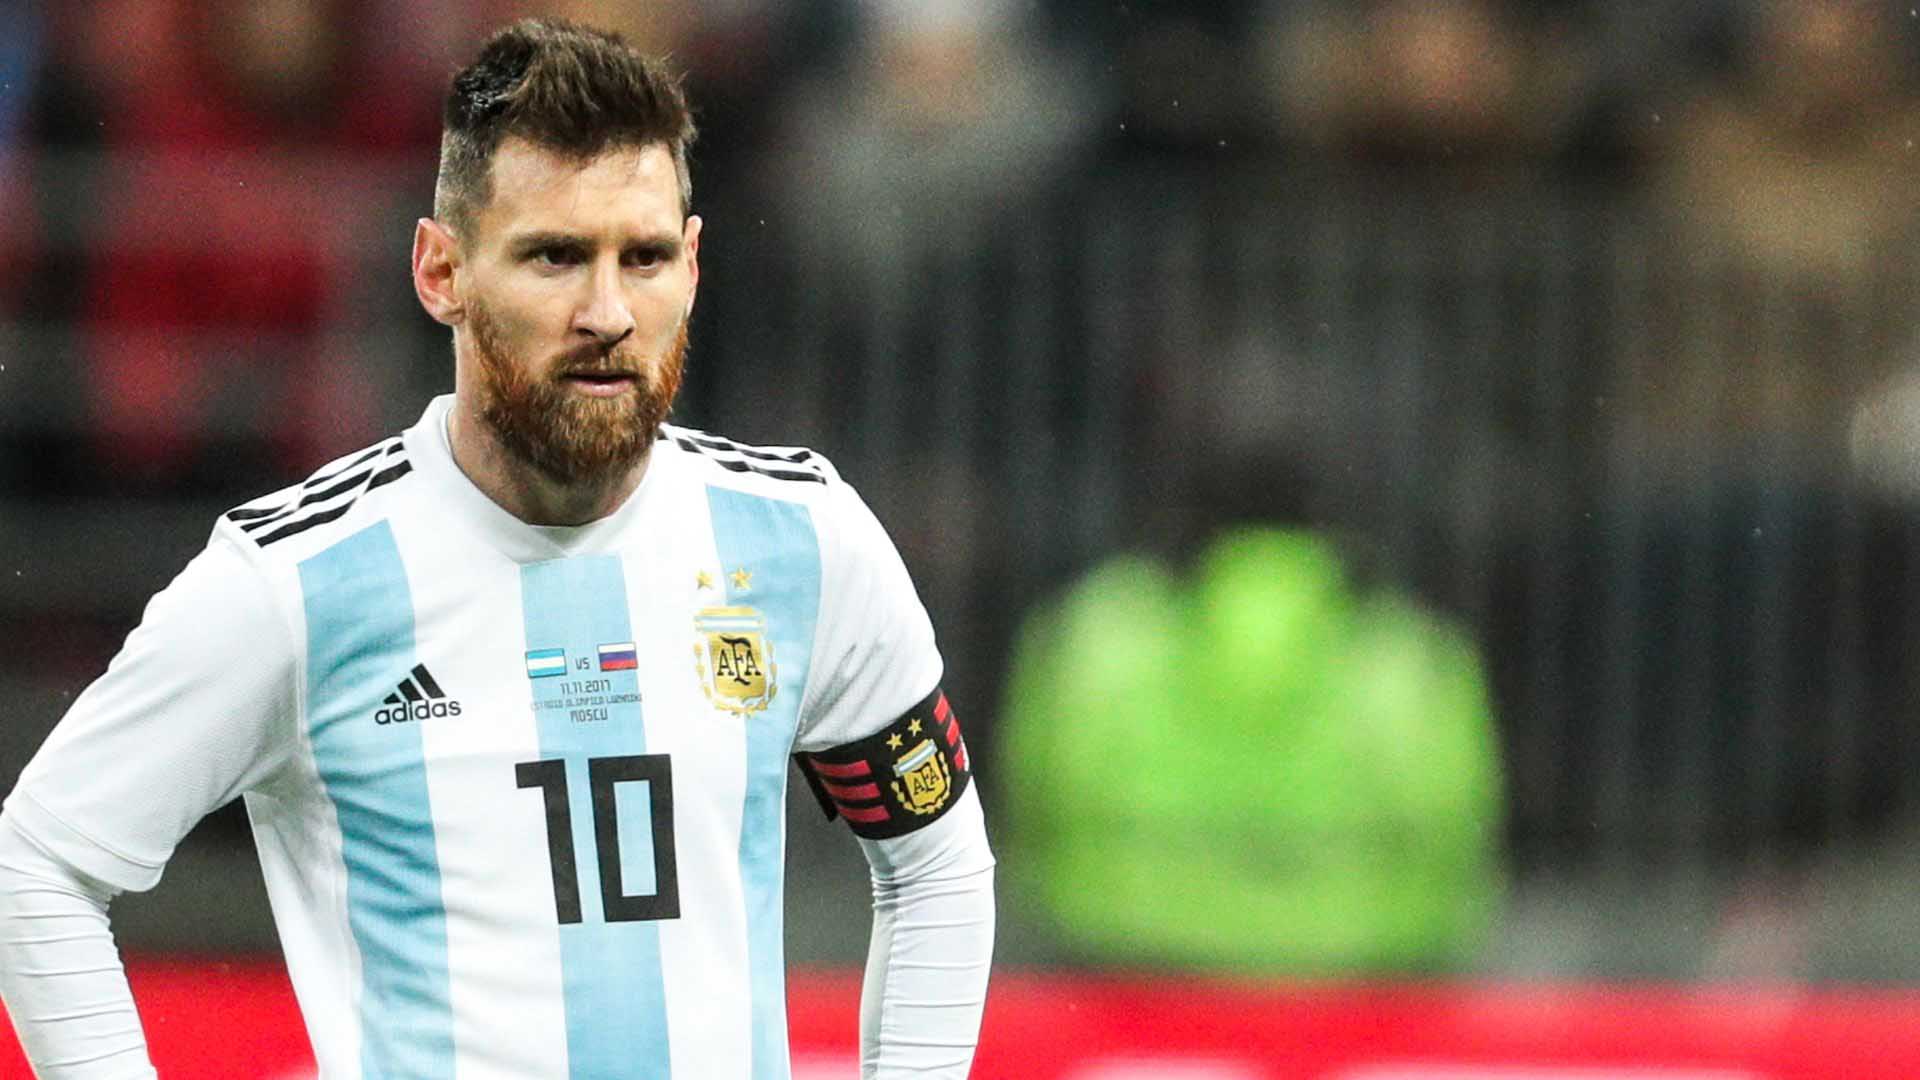 La AFA pidió 1,1 millones de dólares para jugar el amistoso y la FRMF aceptó con la condición de que Messi participase en el partido